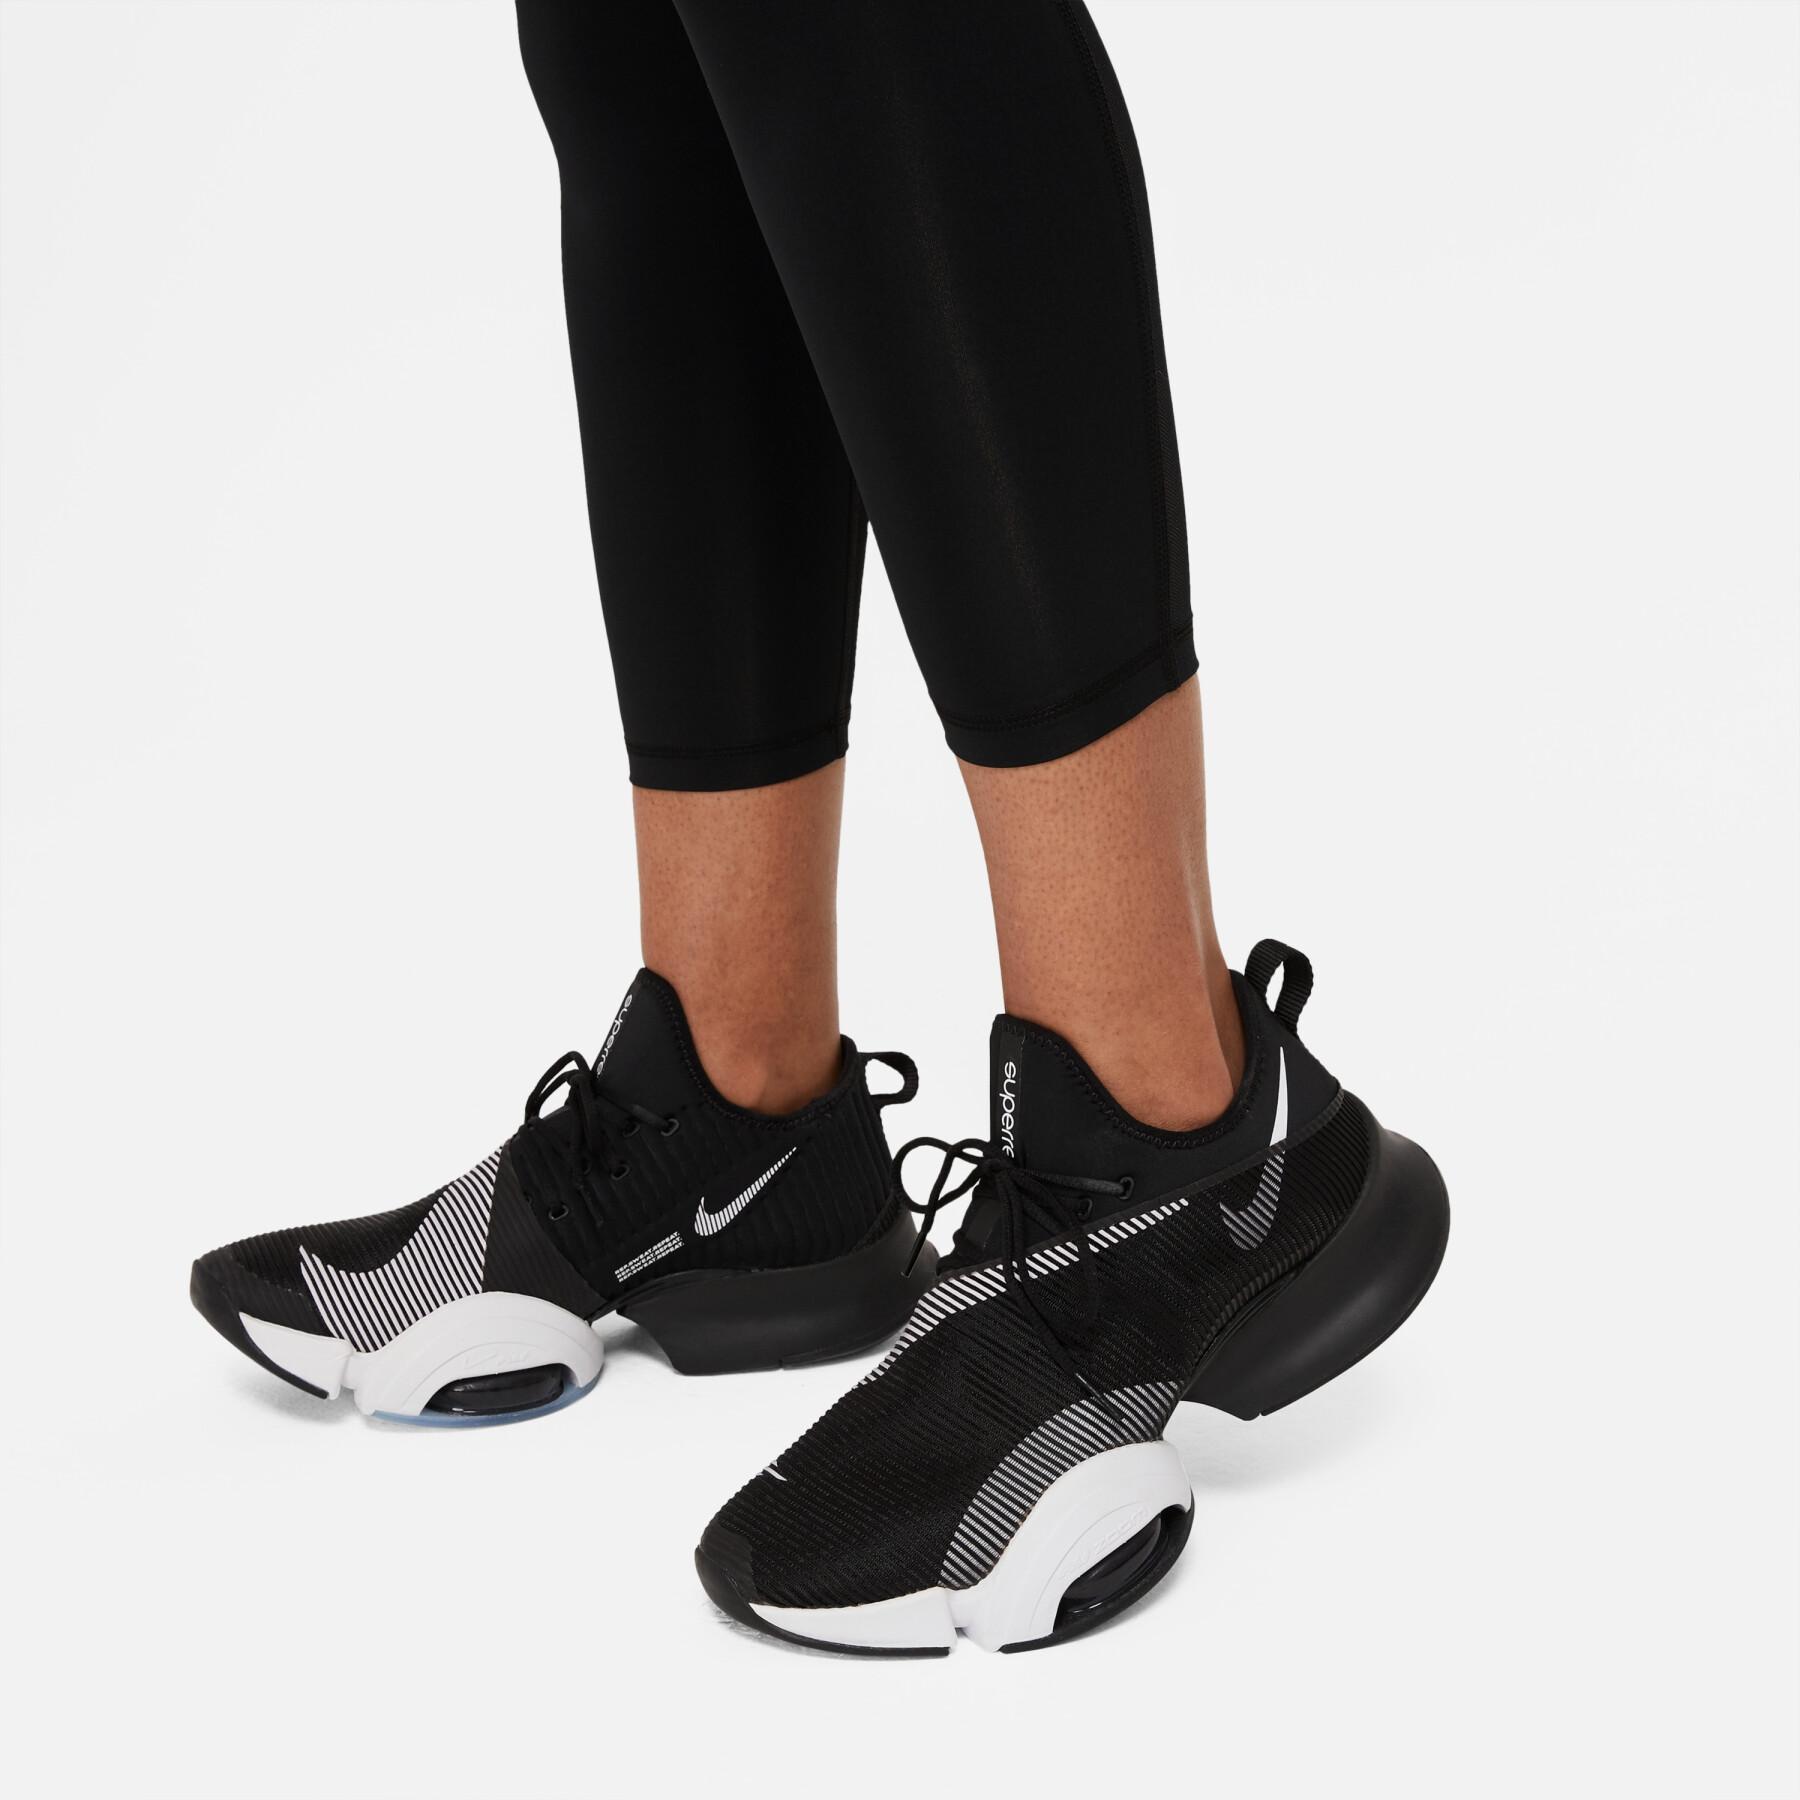 Dames legging Nike Pro 365